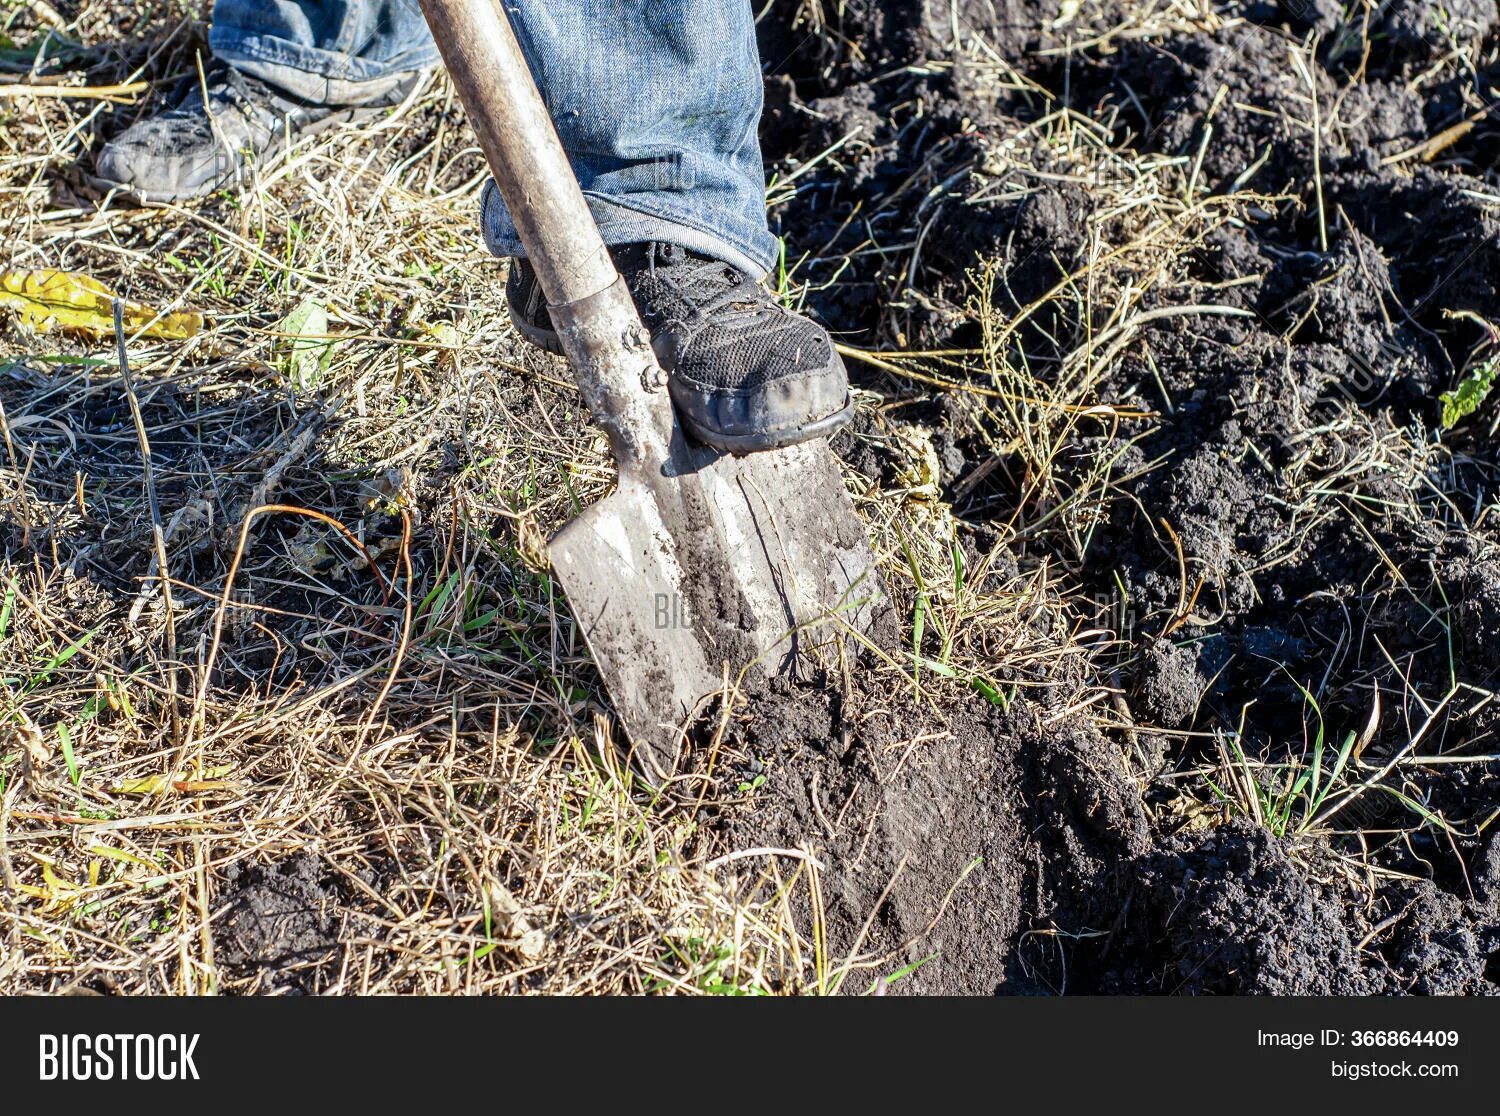 Копать лопатой. Копать землю лопатой. Лопата в земле. Копальщик земли.